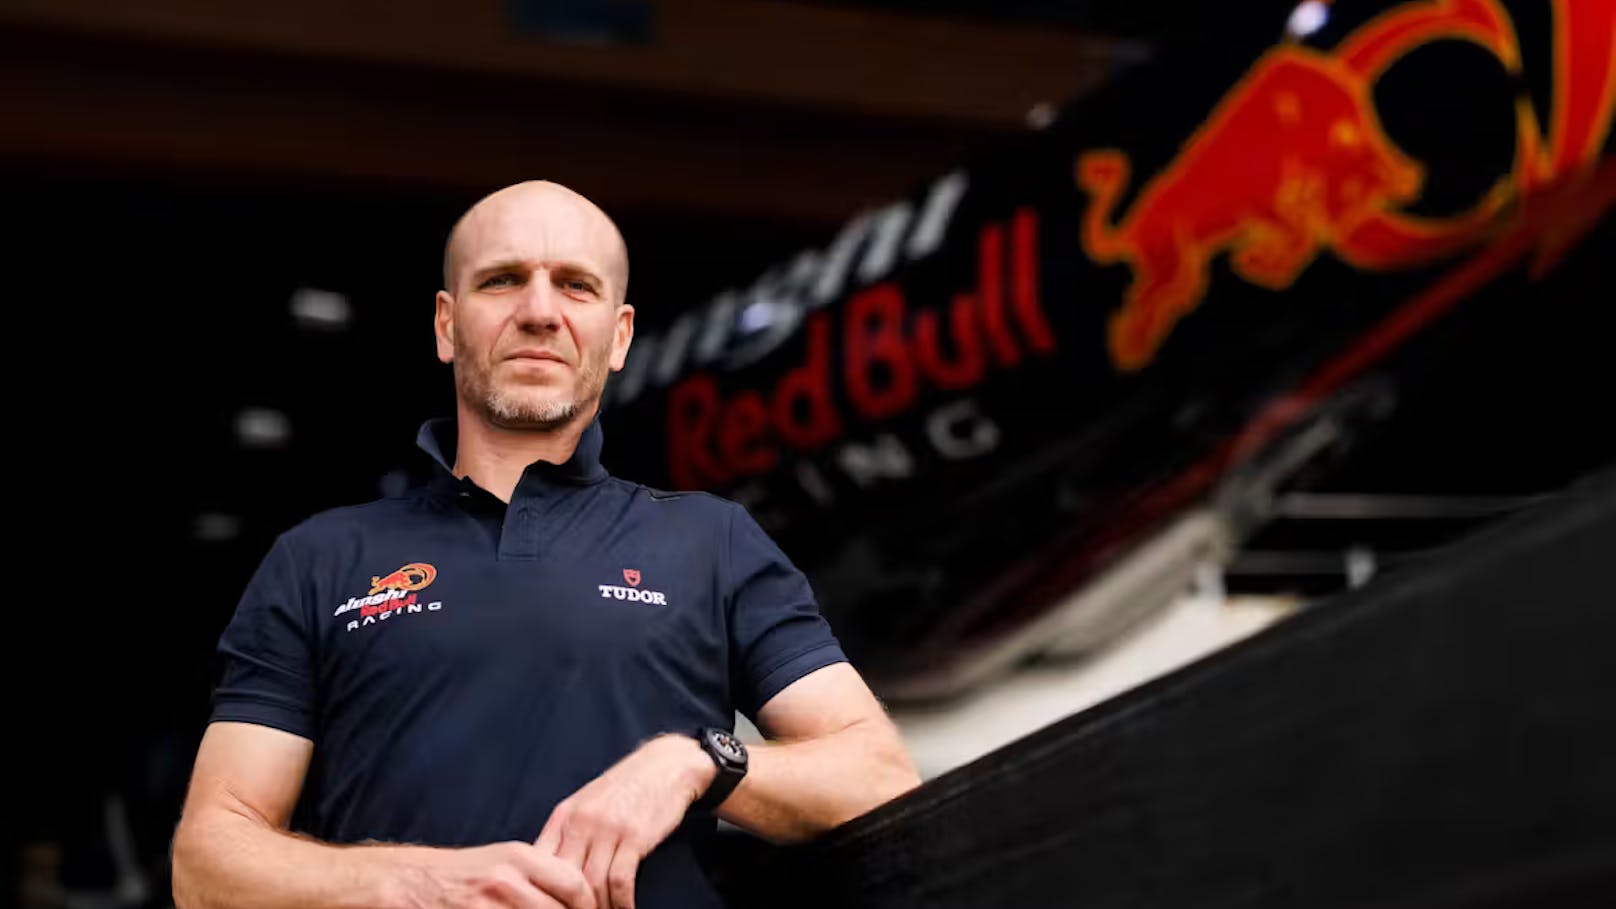 Red-Bull-Star (47) tot – Todesfall erschüttert Team